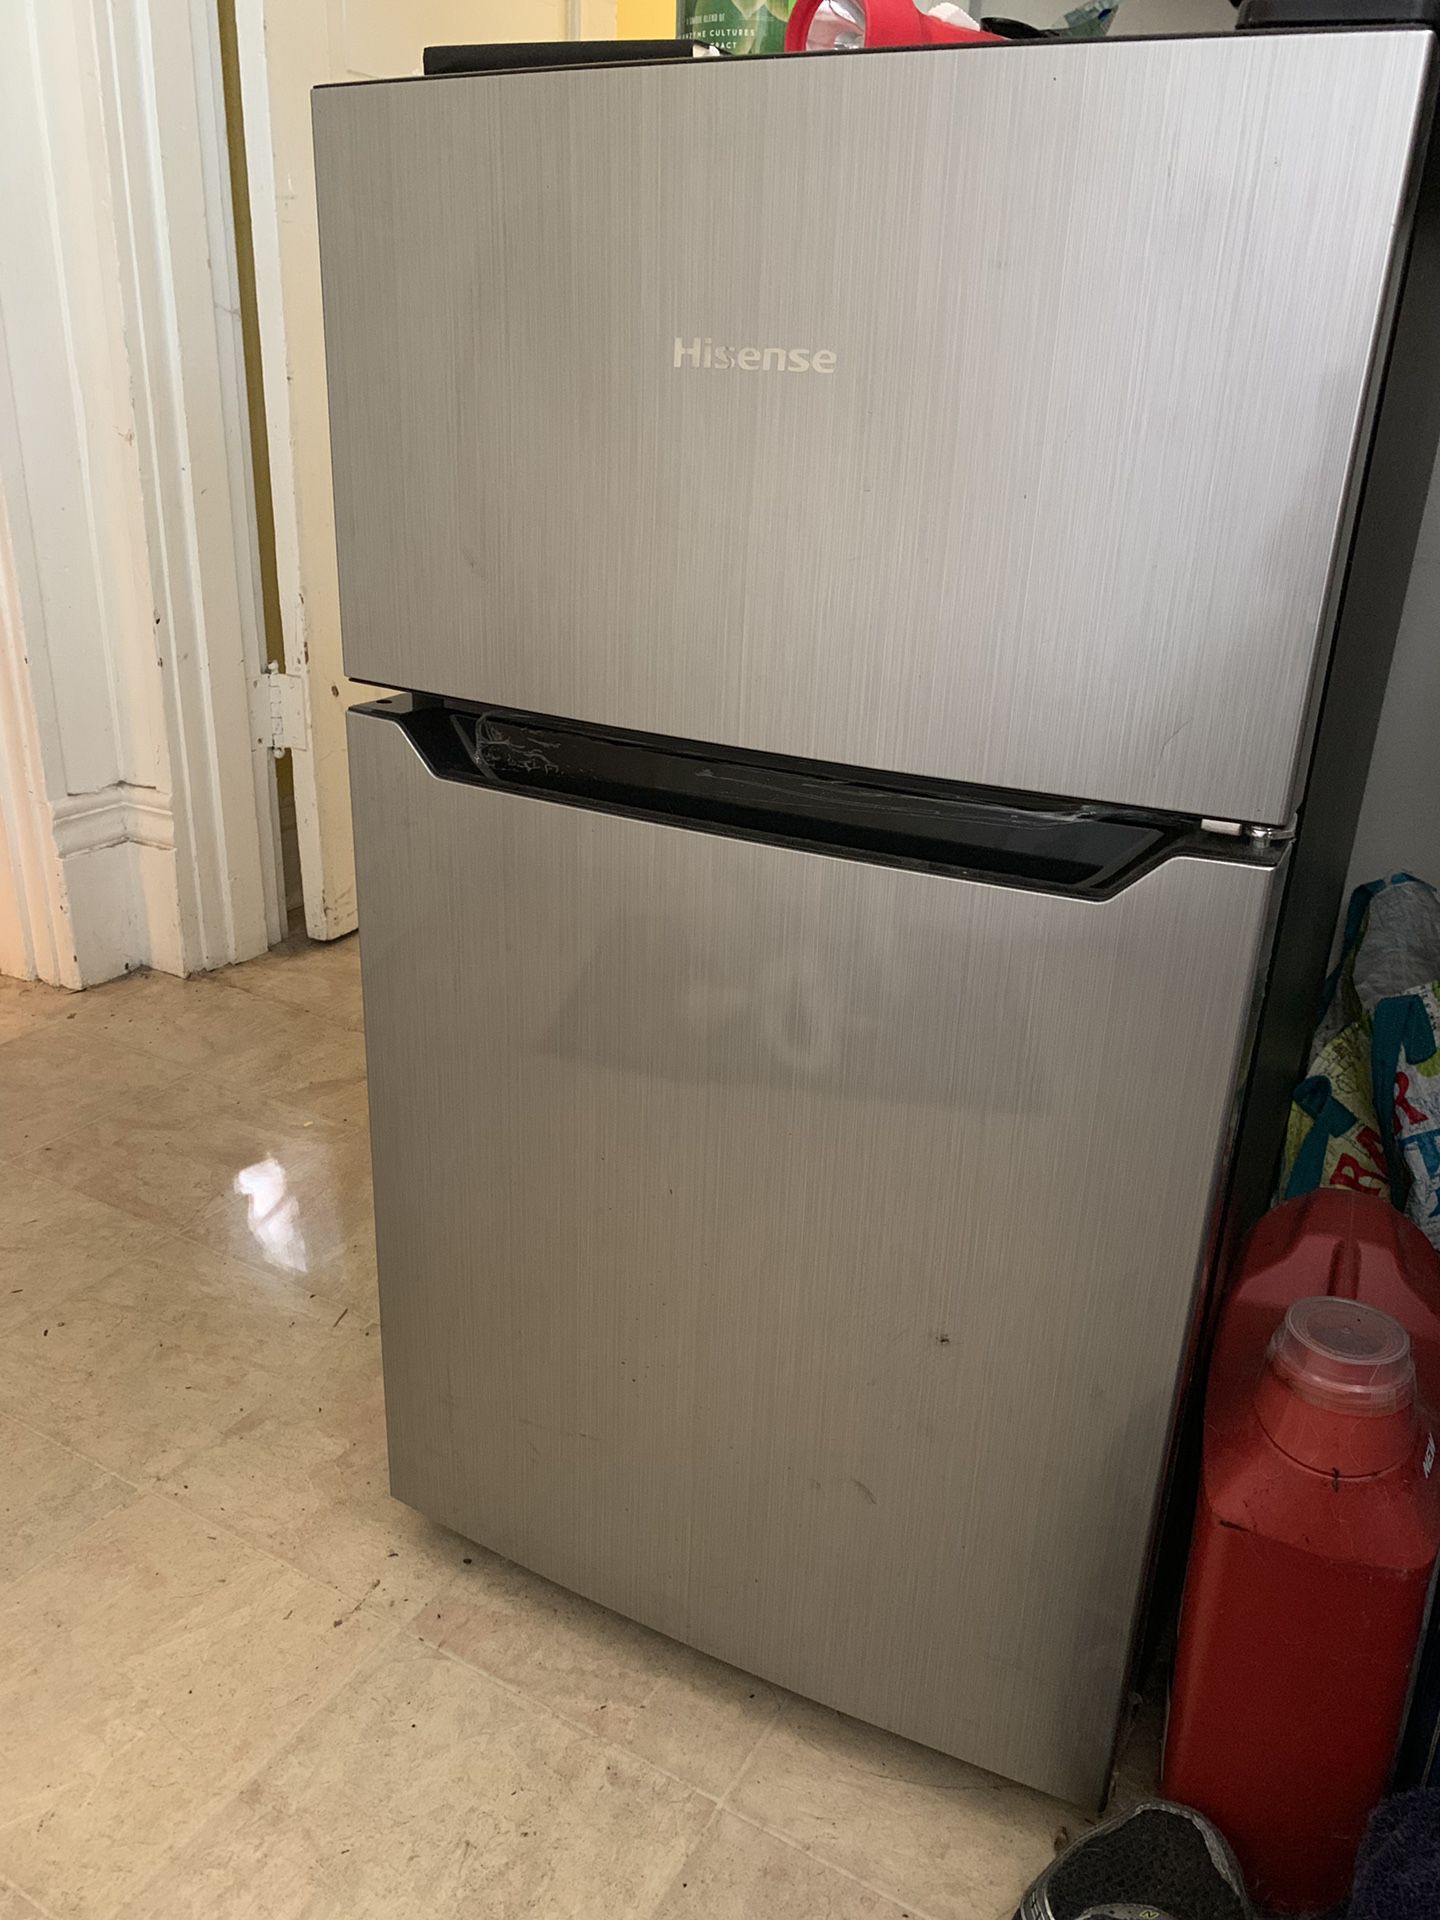 Hisense mini fridge